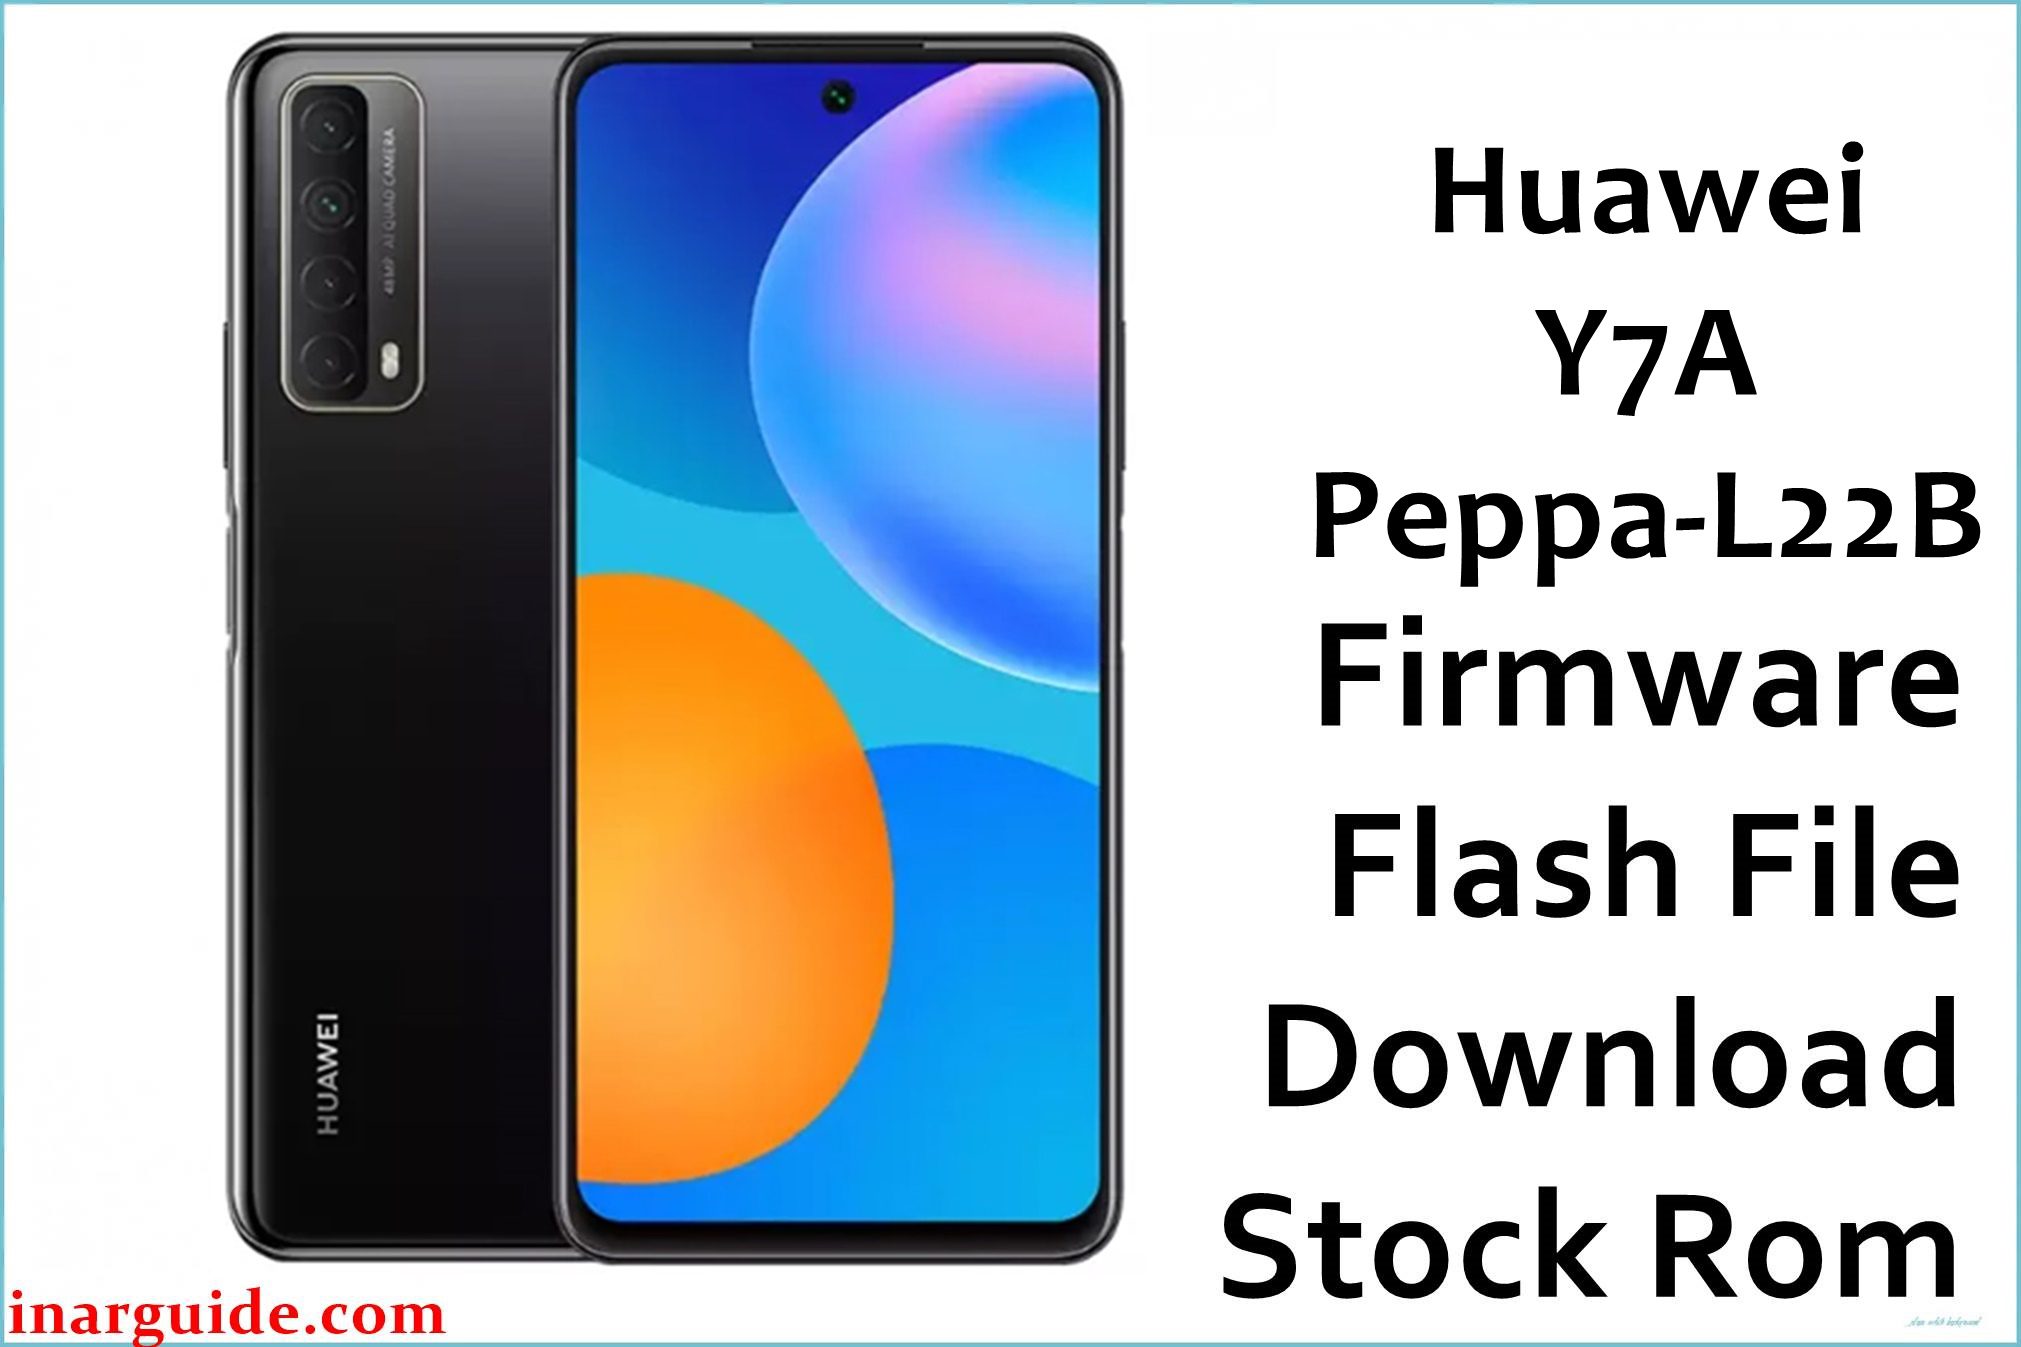 Huawei Y7A Peppa L22B